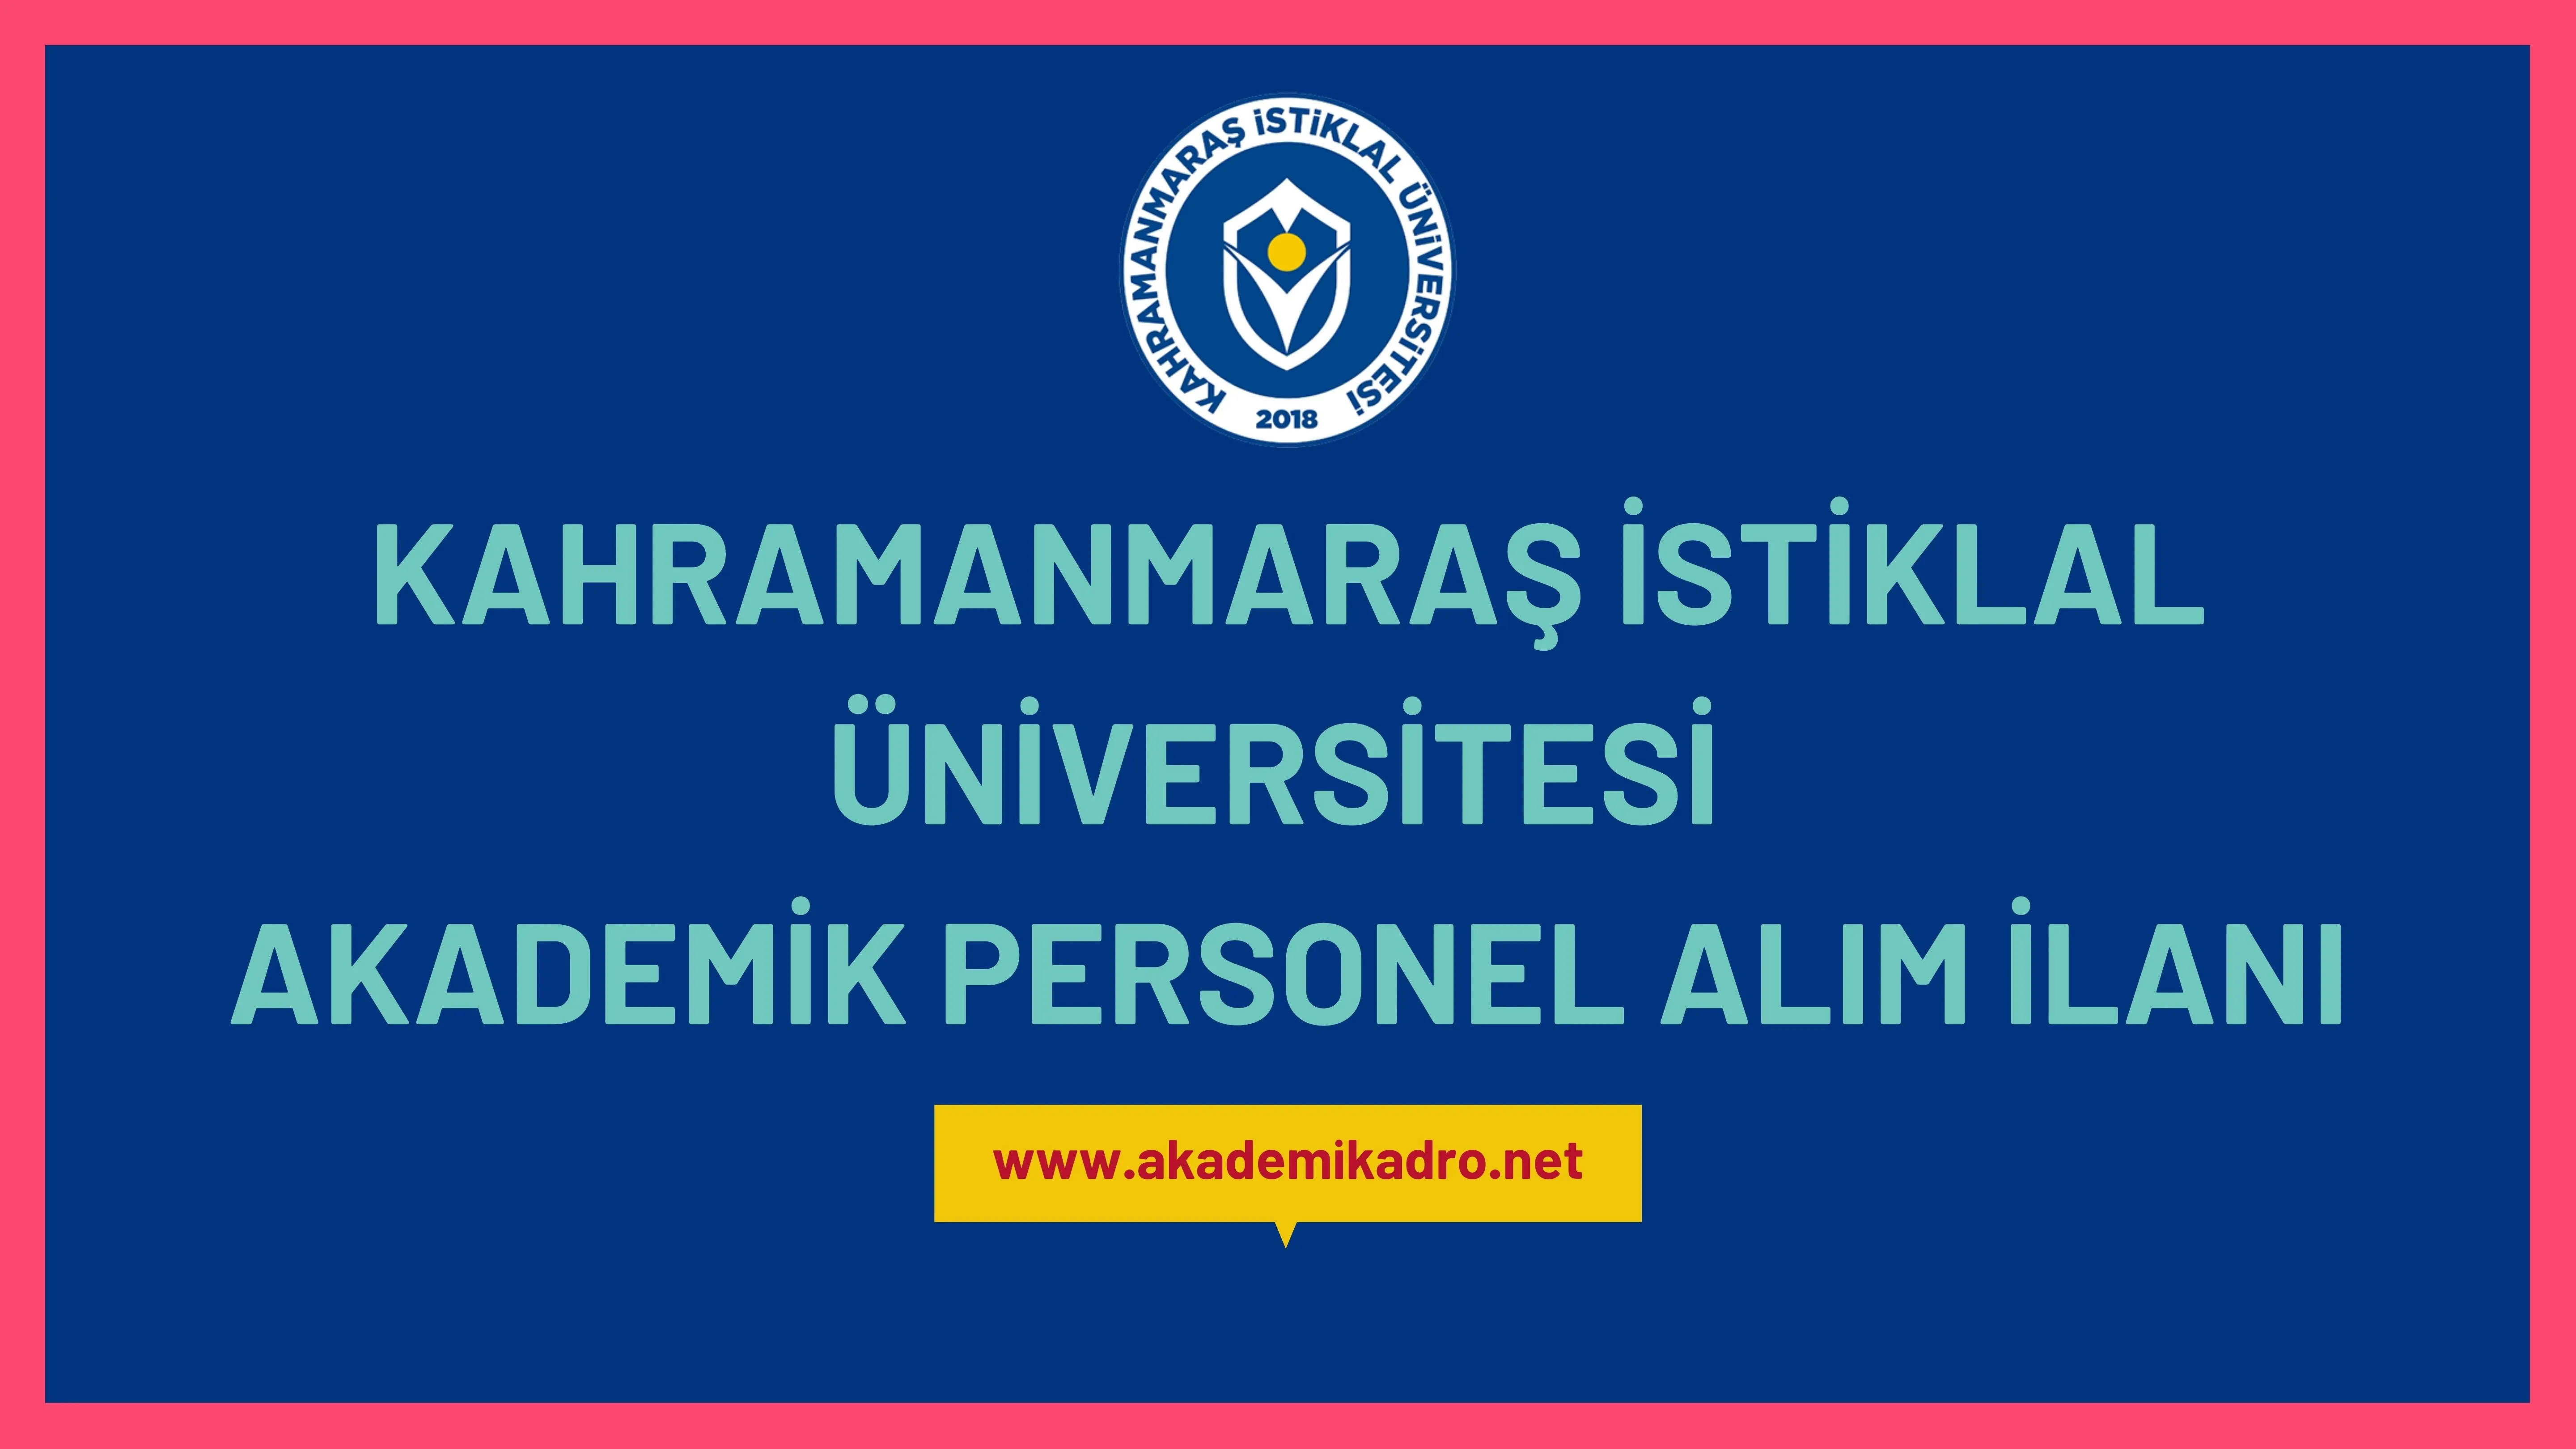 Kahramanmaraş İstiklal Üniversitesi çeşitli branşlarda 11 akademik personel alacak.